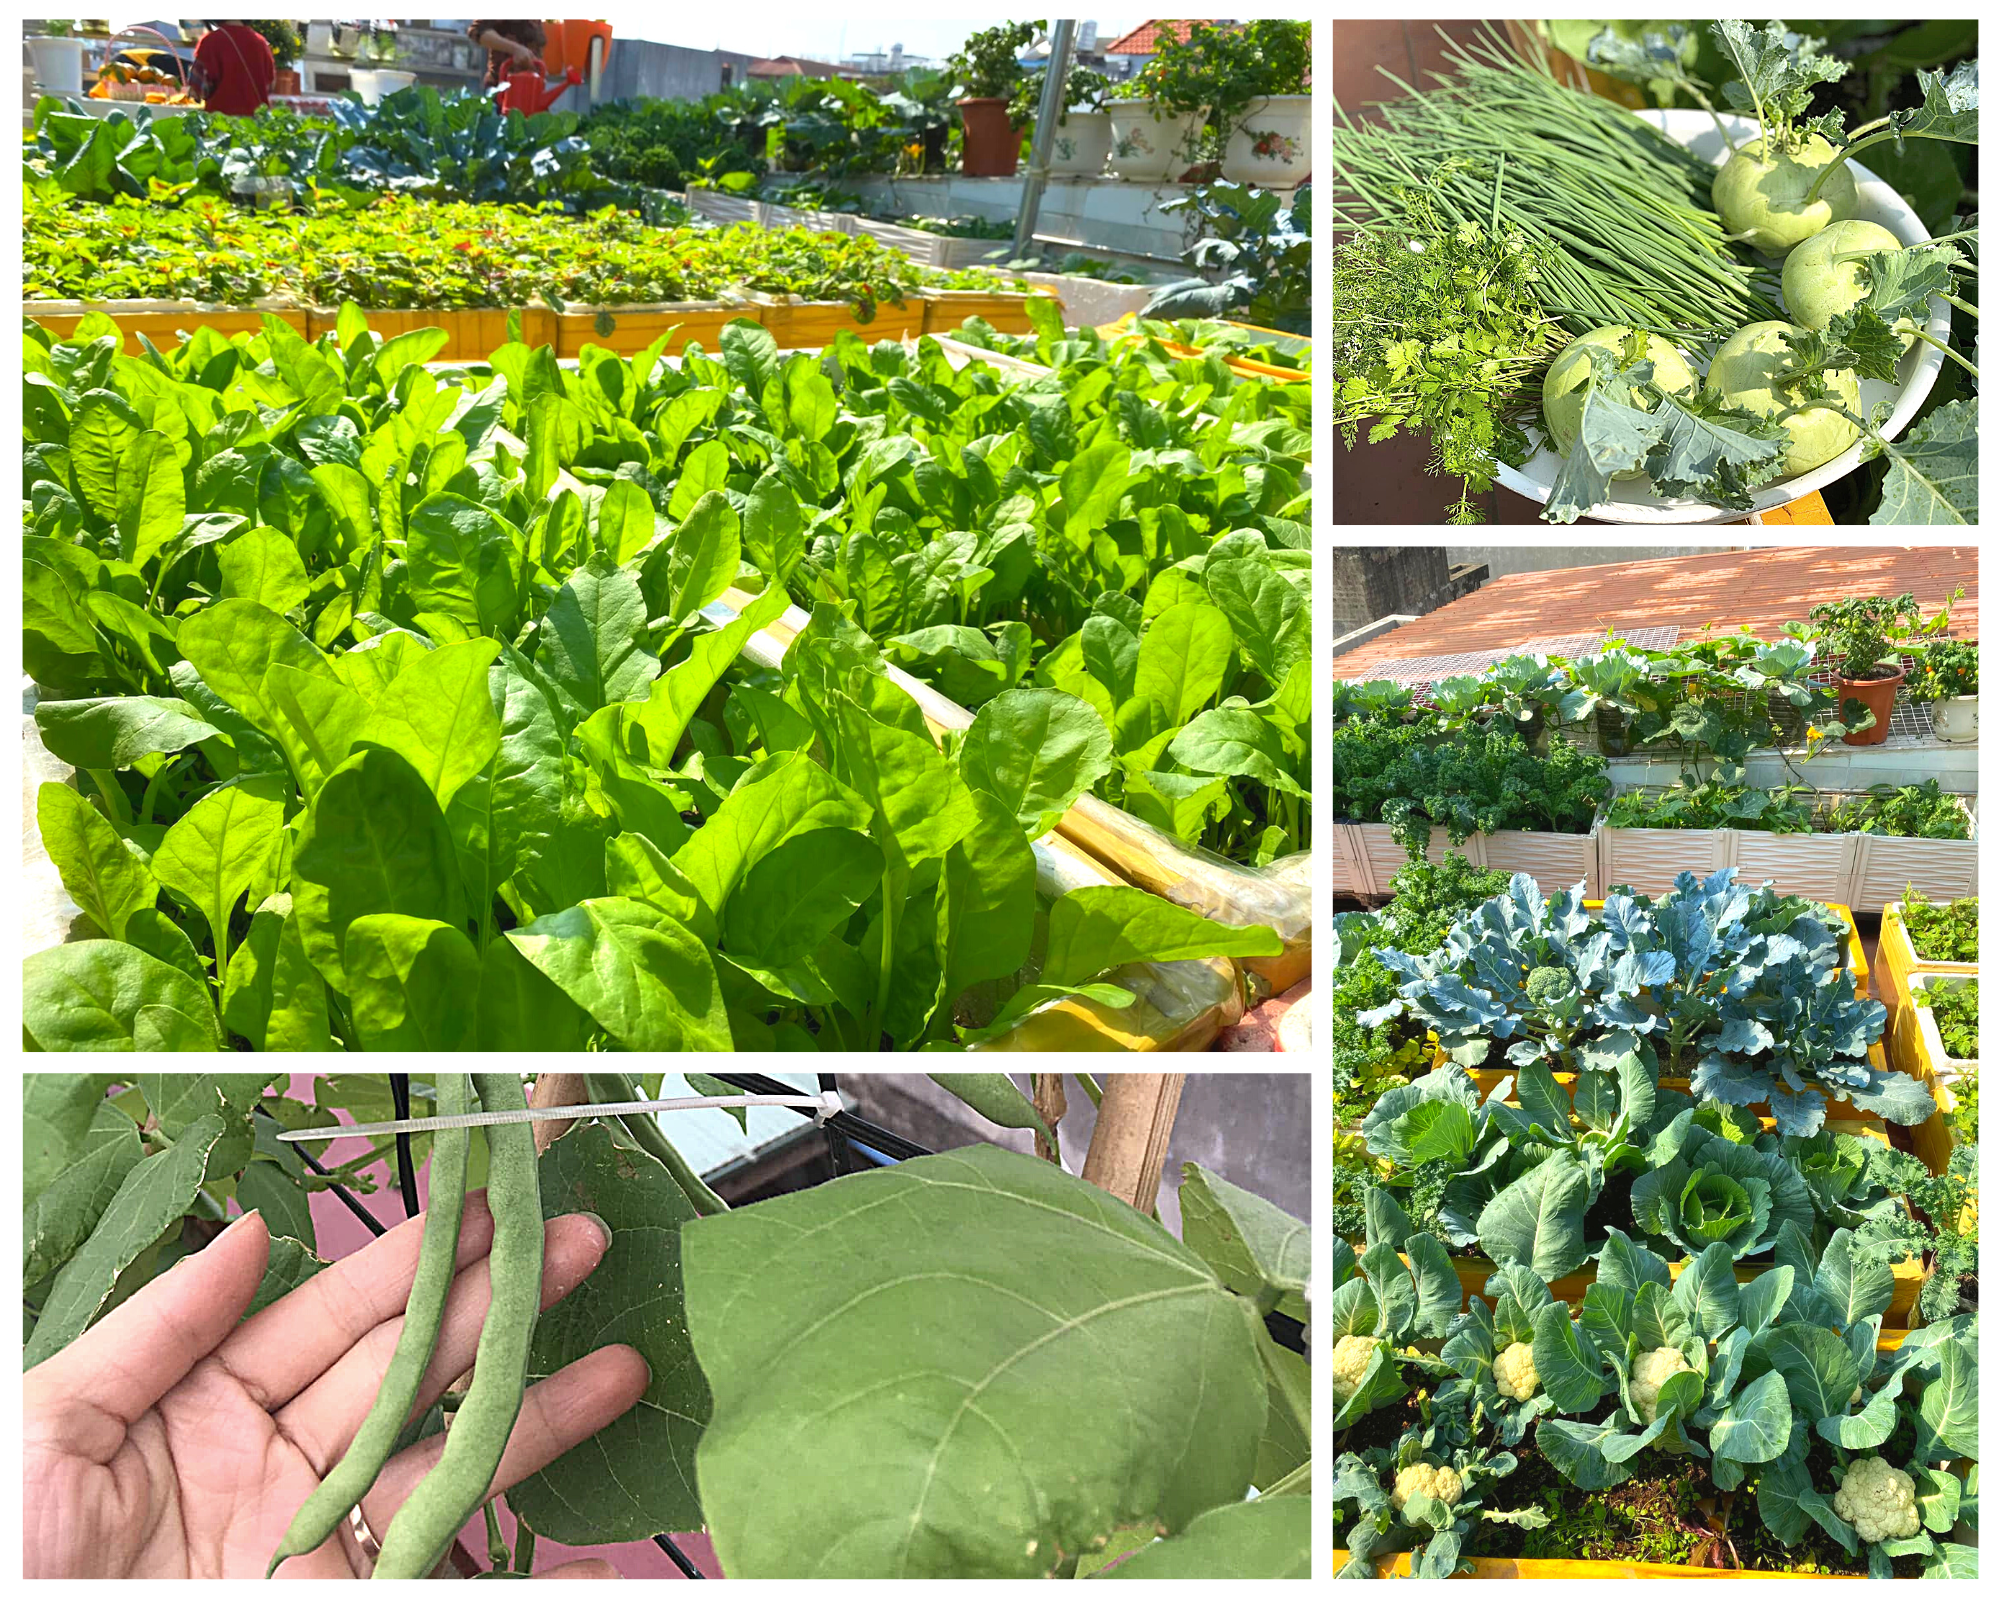 Mê mẩn vườn rau sạch 40m² trồng trong thùng xốp trên sân thượng của mẹ đảm Hải Phòng - Ảnh 1.